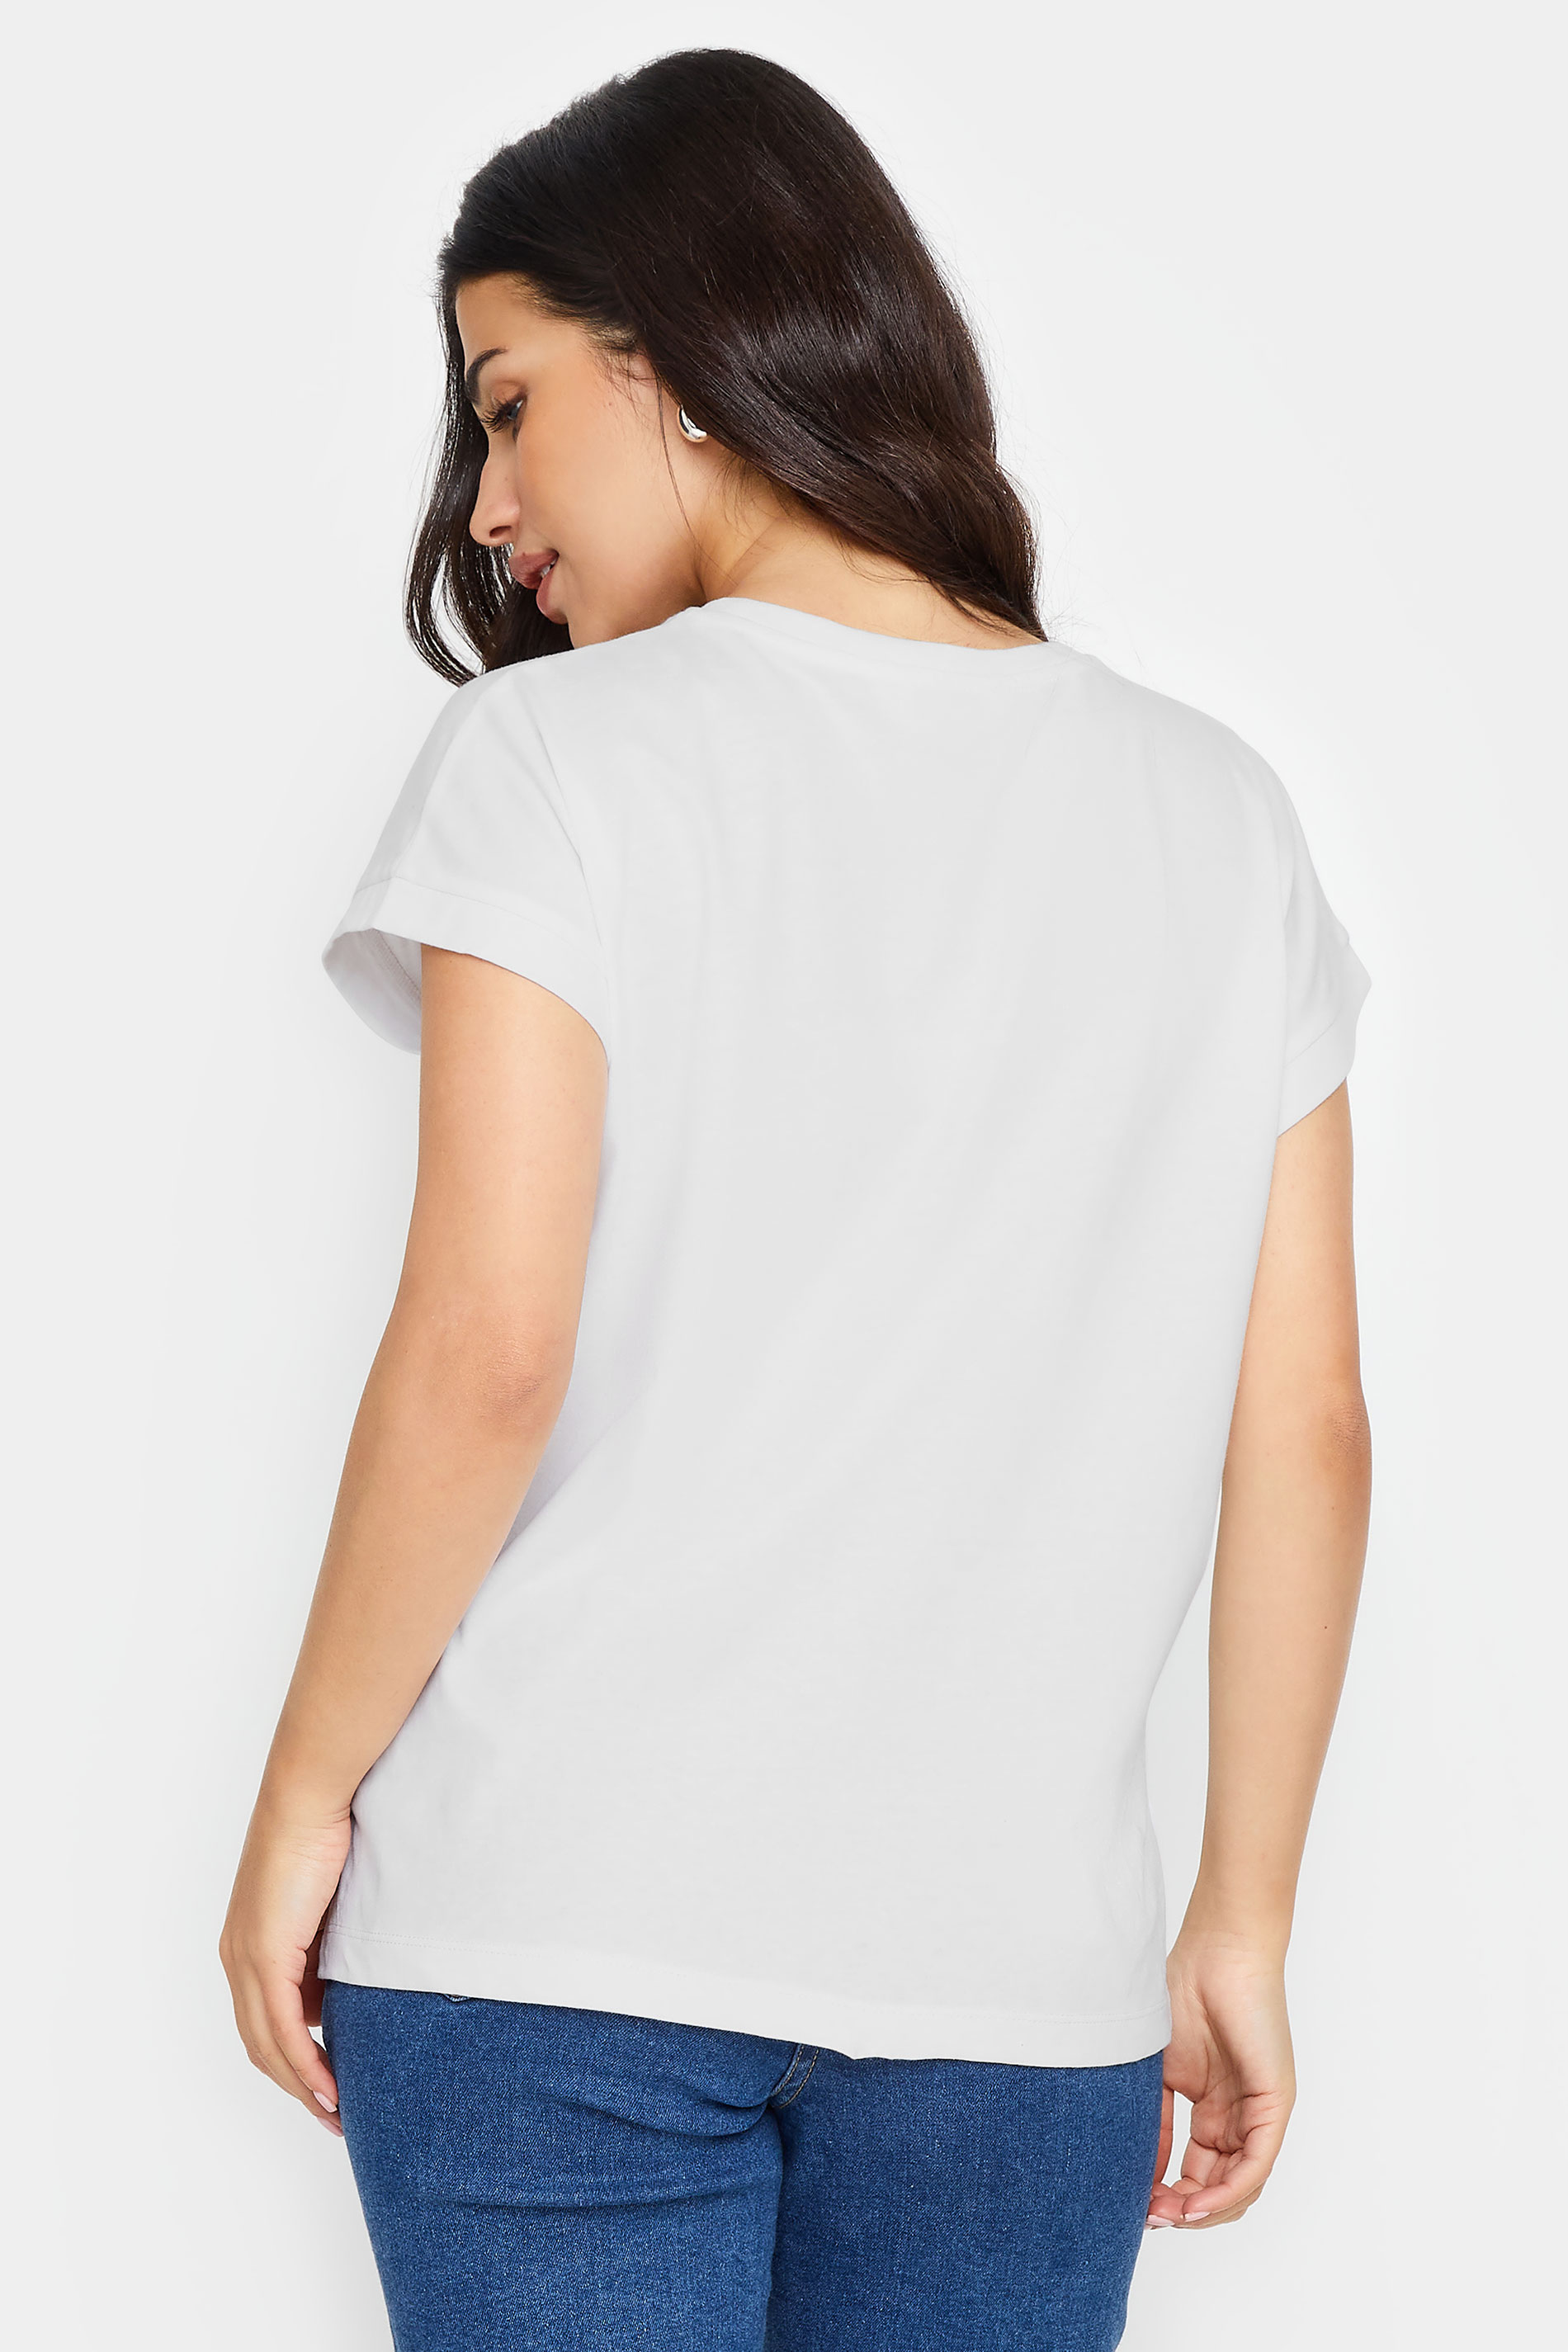 PixieGirl Petite Women's White Short Sleeve T-Shirt | PixieGirl 3